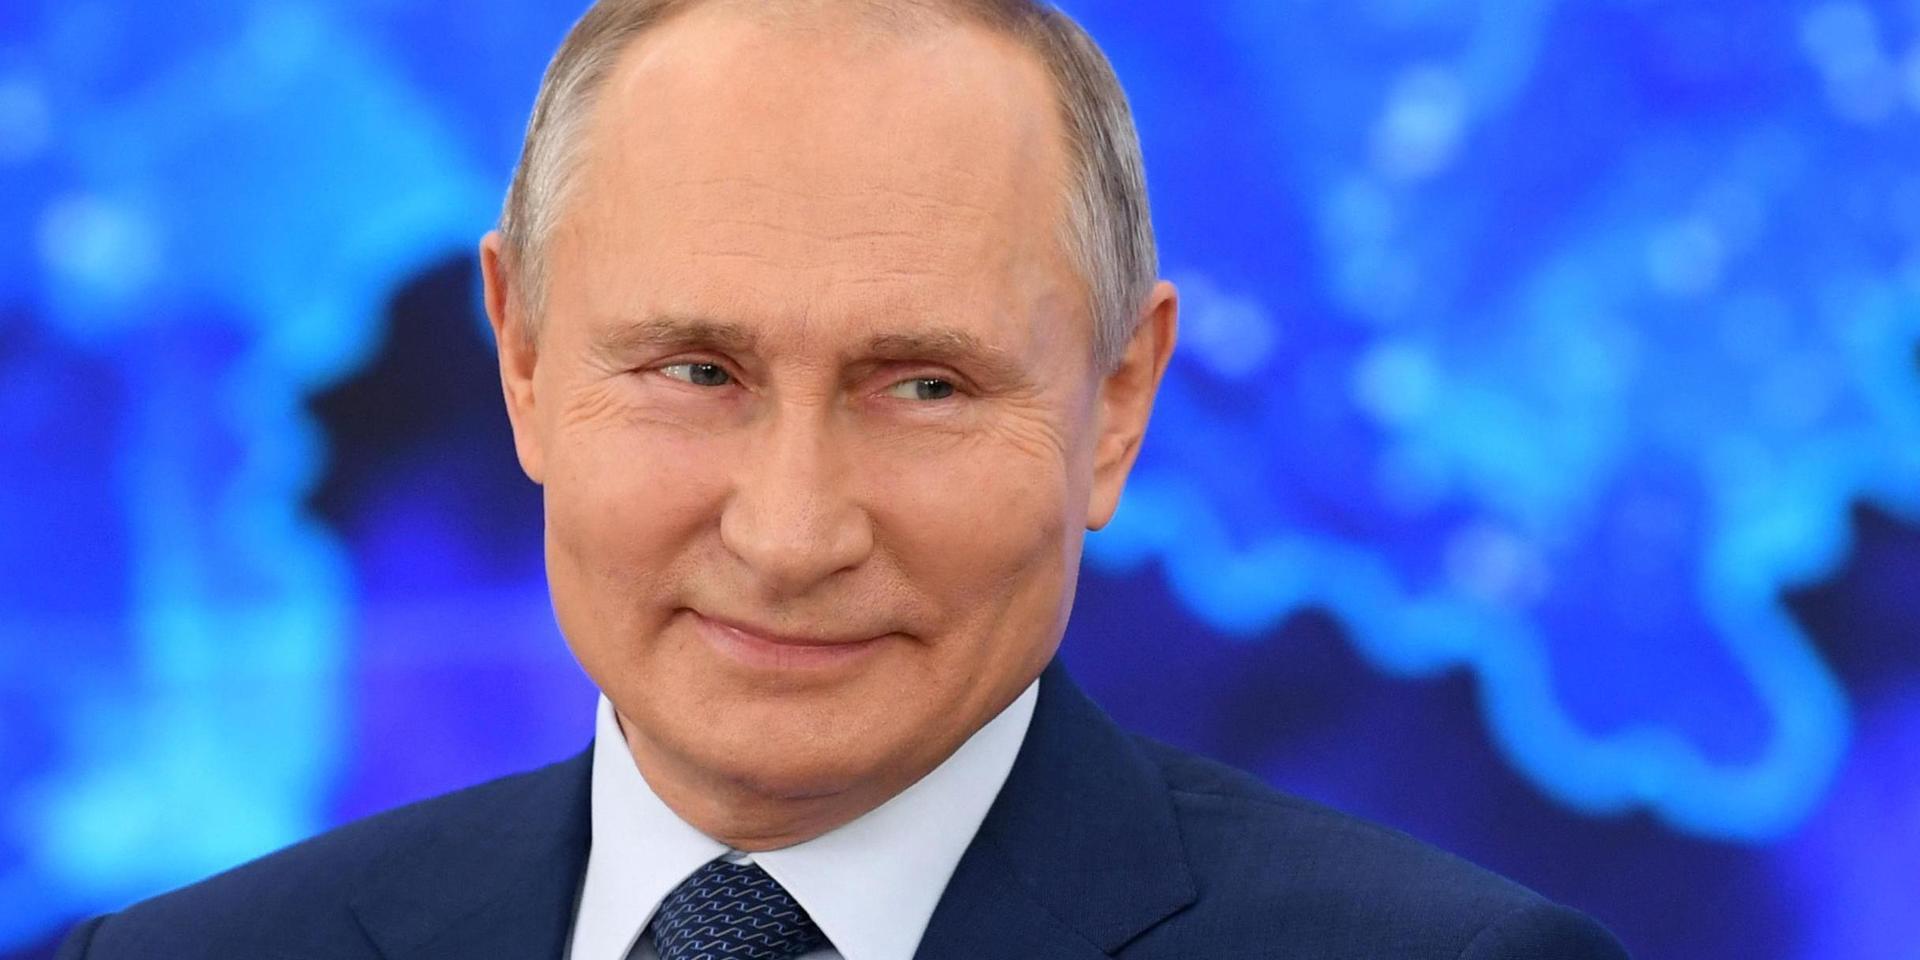 Rysslands president Vladimir Putin säger sig inte ha bestämt om han vill sitta kvar vid makten efter att hans nuvarande mandatperiod går ut 2024. Han medverkade på videolänk under den årliga presskonferensen.